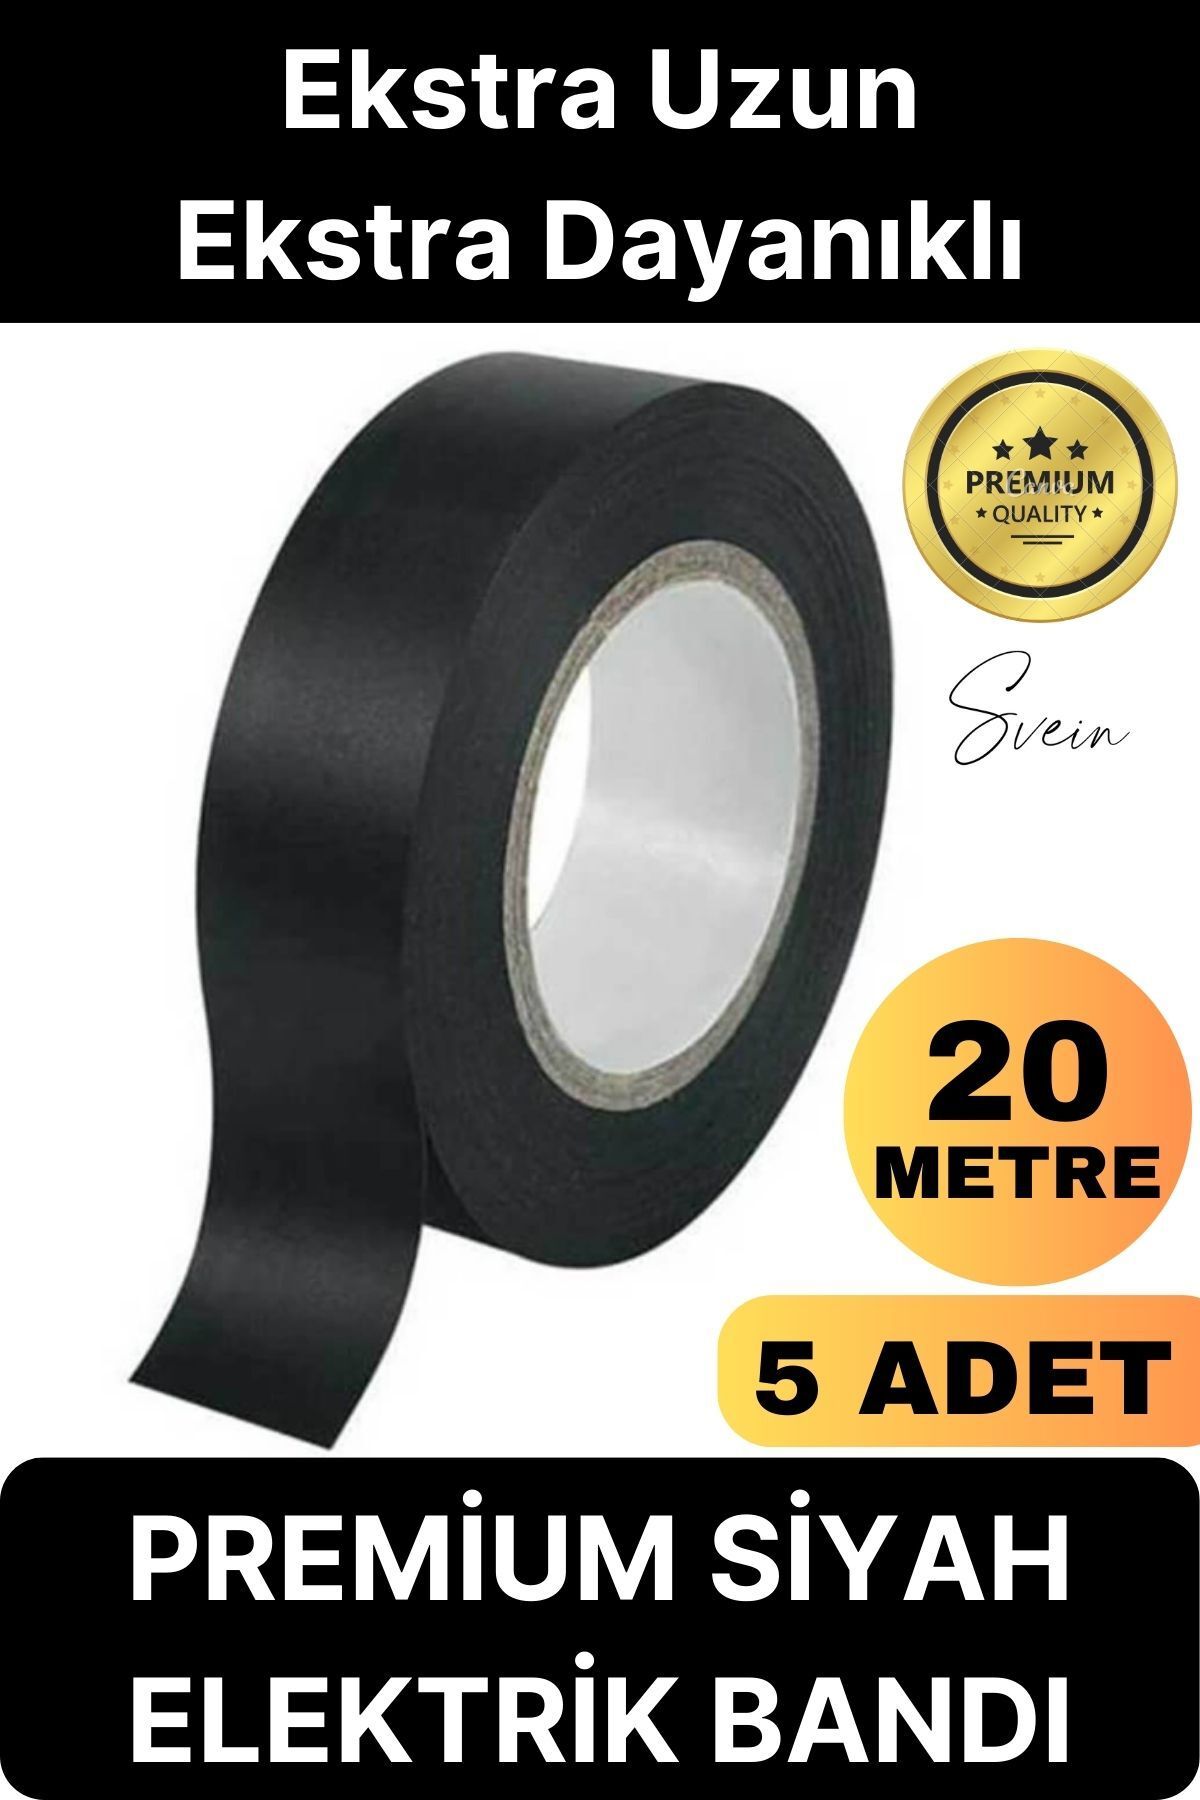 Svein 5 Ad. Premium Kalite 20 Mt Yalıtım İzole PVC Elektrik Bandı Su Geçirmez Sızdırmaz Koruma Bant Siyah